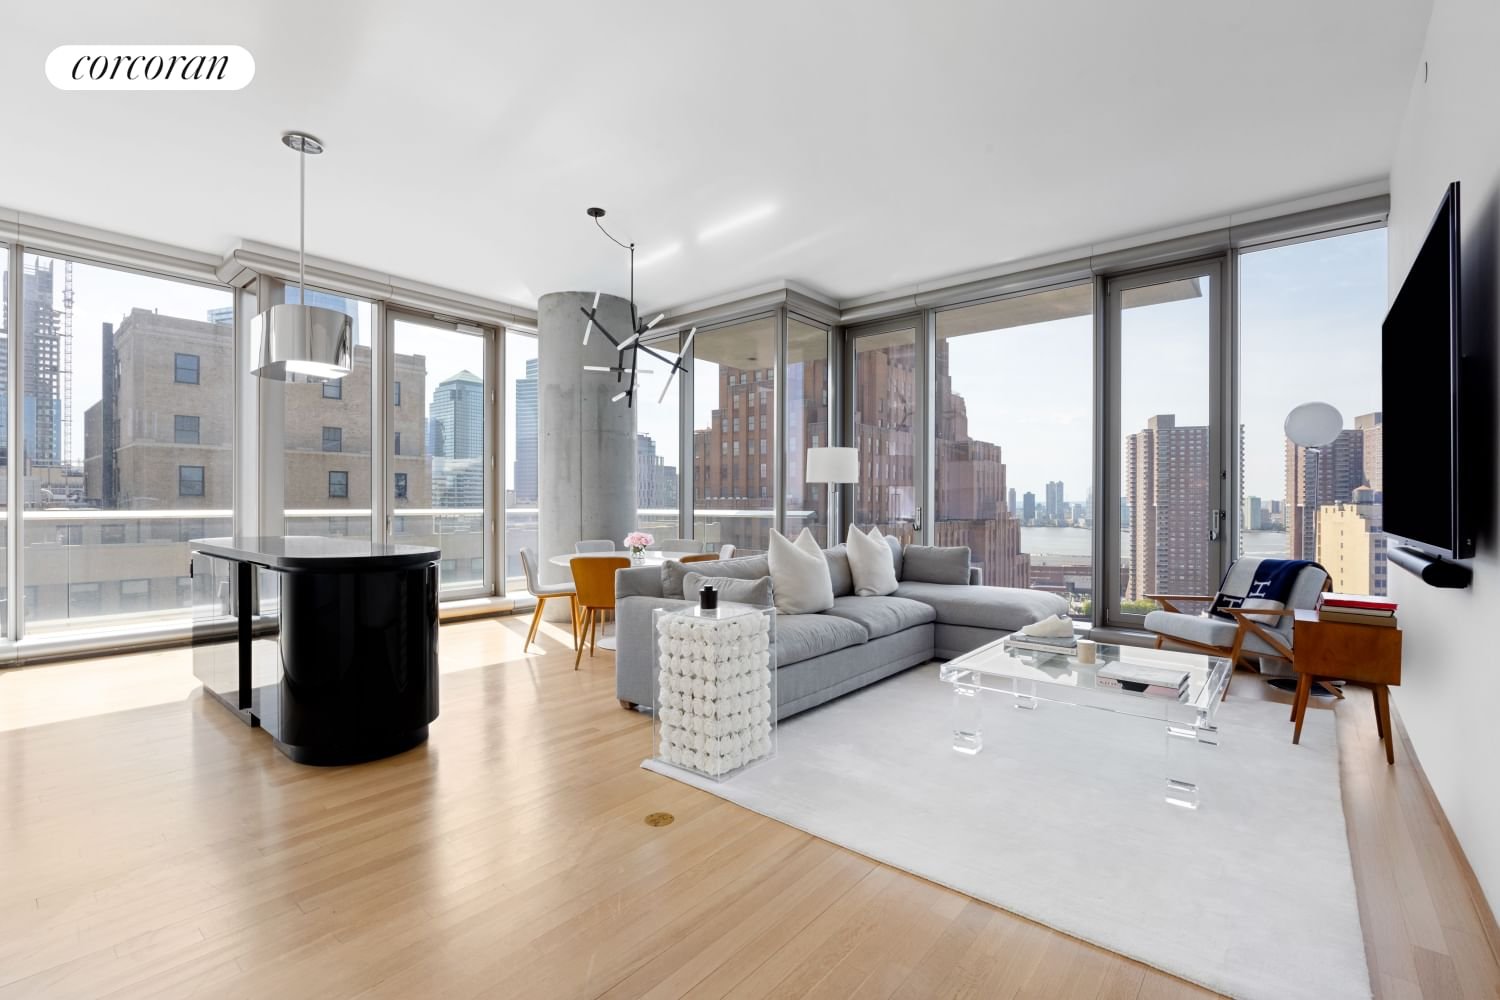 Real estate property located at 56 LEONARD #20AW, NewYork, Tribeca, New York City, NY